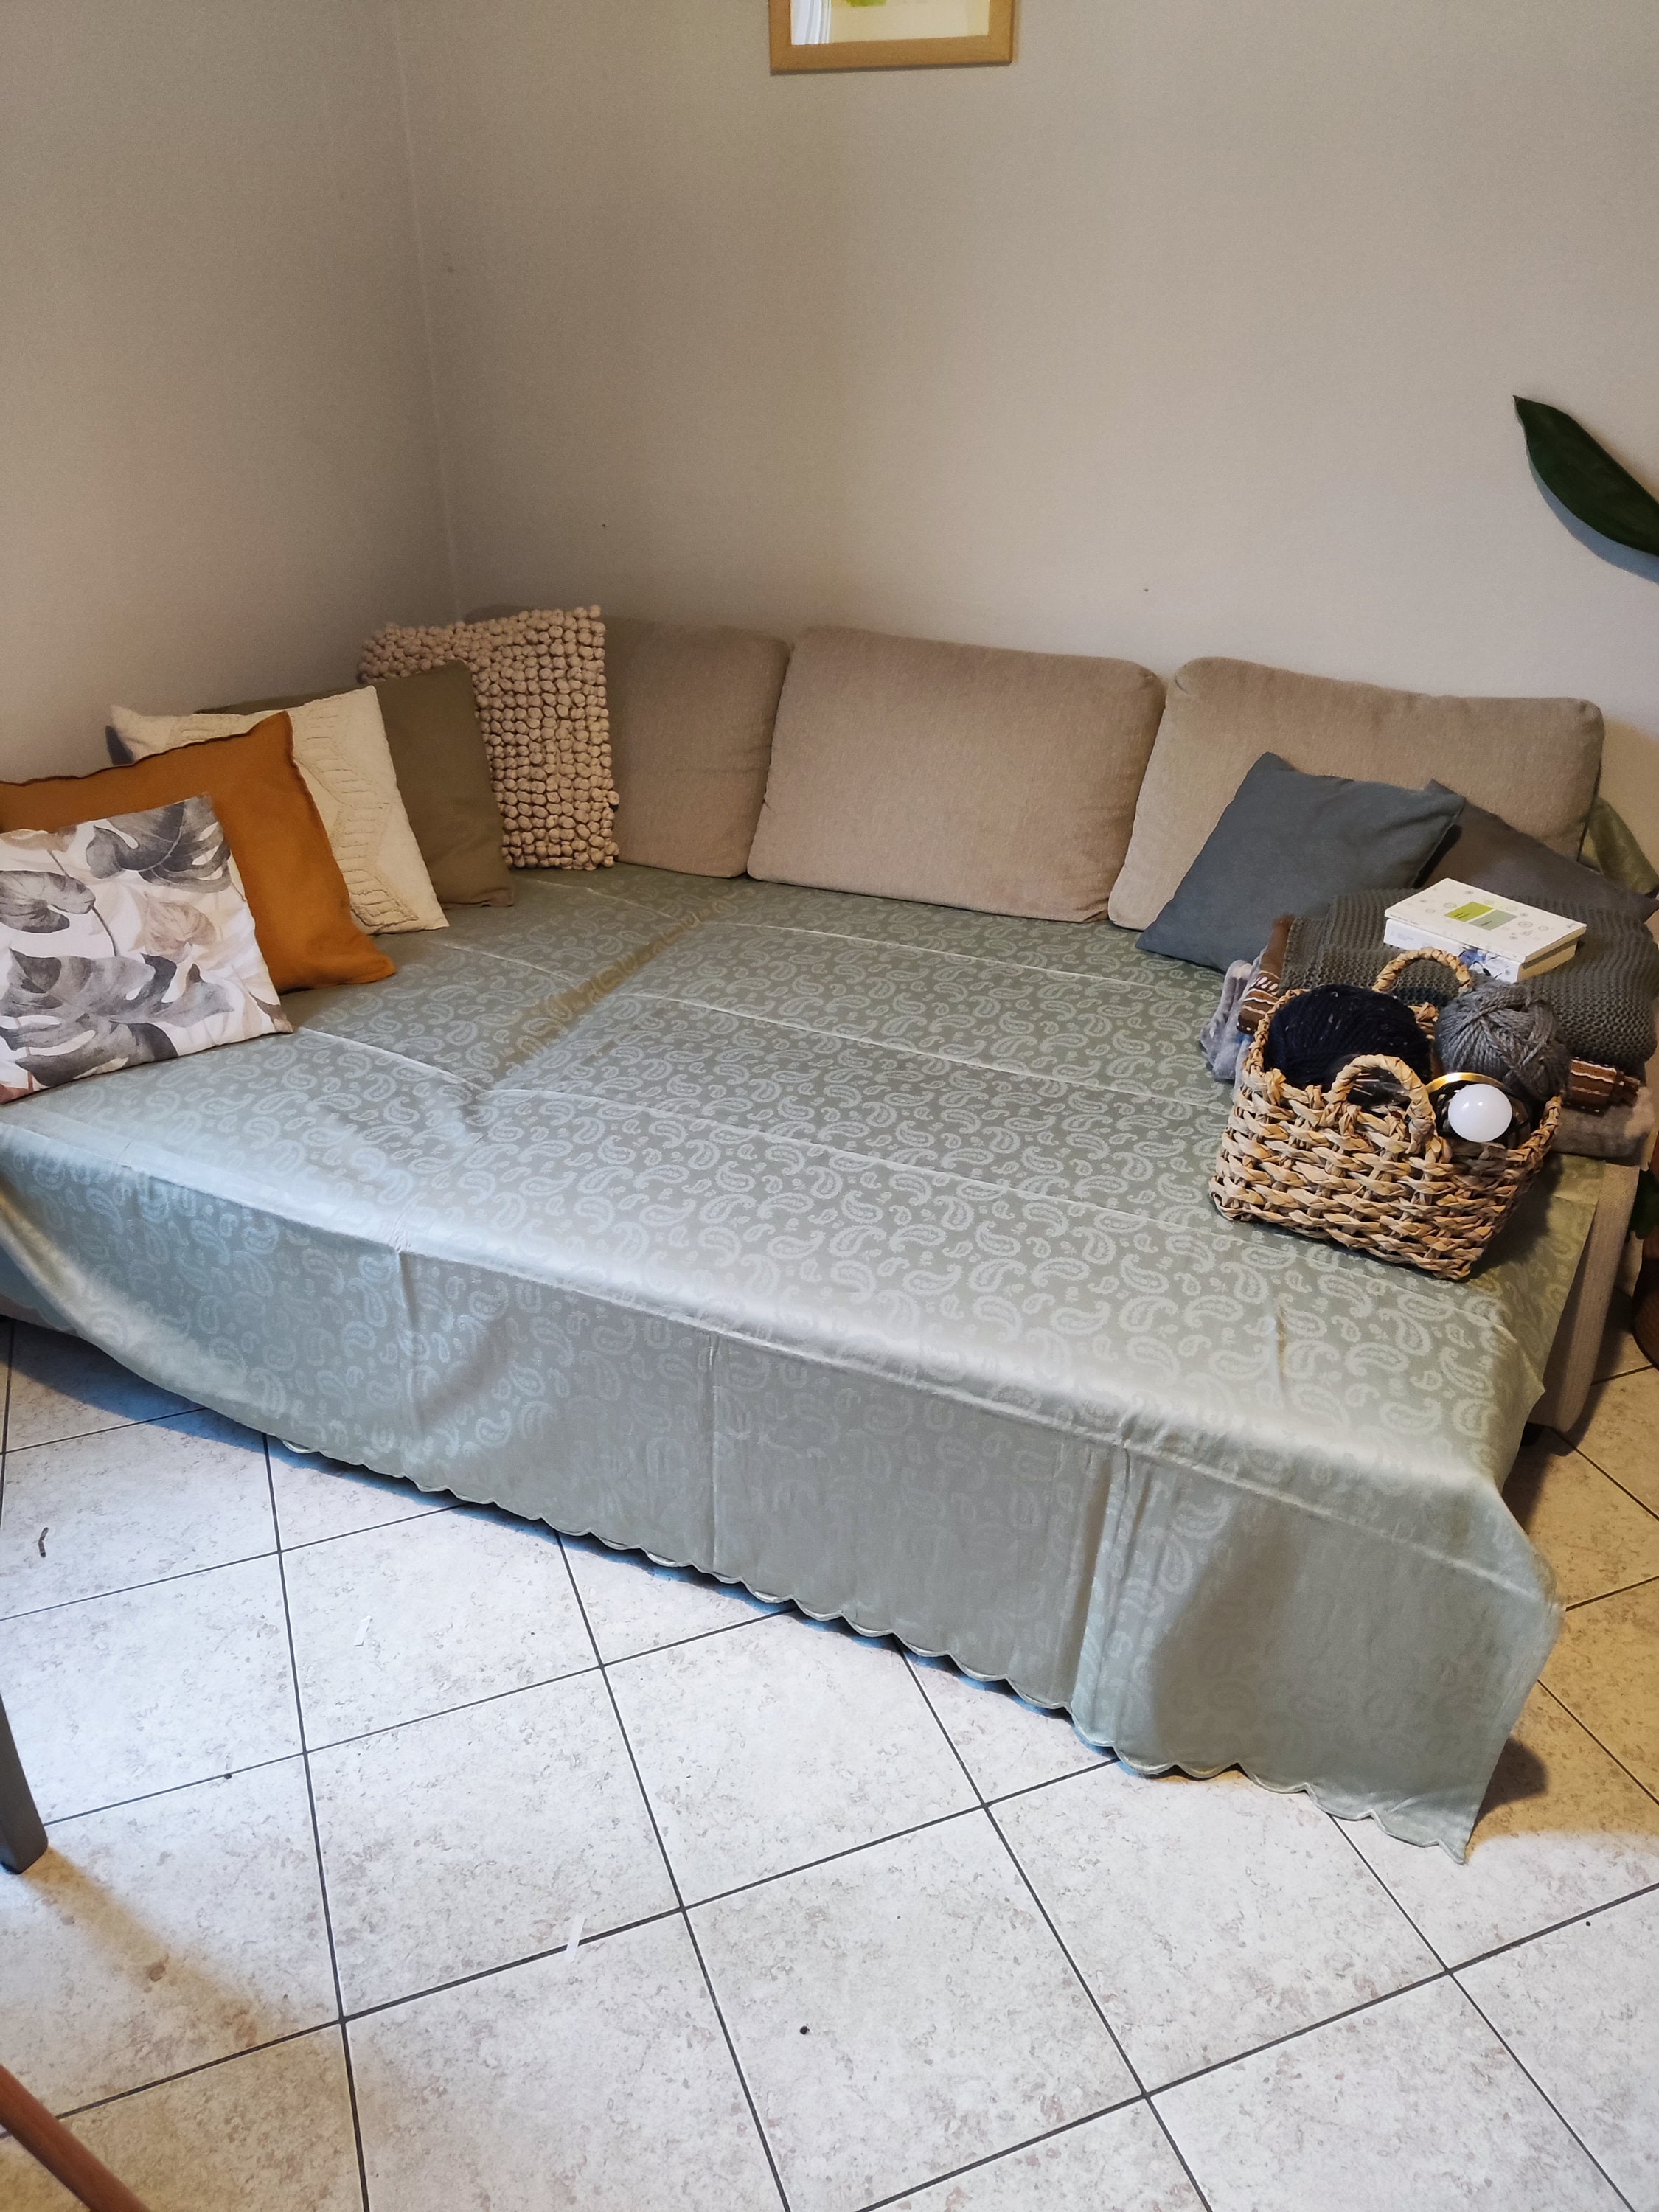 Coperta multiuso in cotone Ferd Grigio 180x260 cm, plaid per letto,  Copriletto, copridivano, foulard per divano, copertura per divano